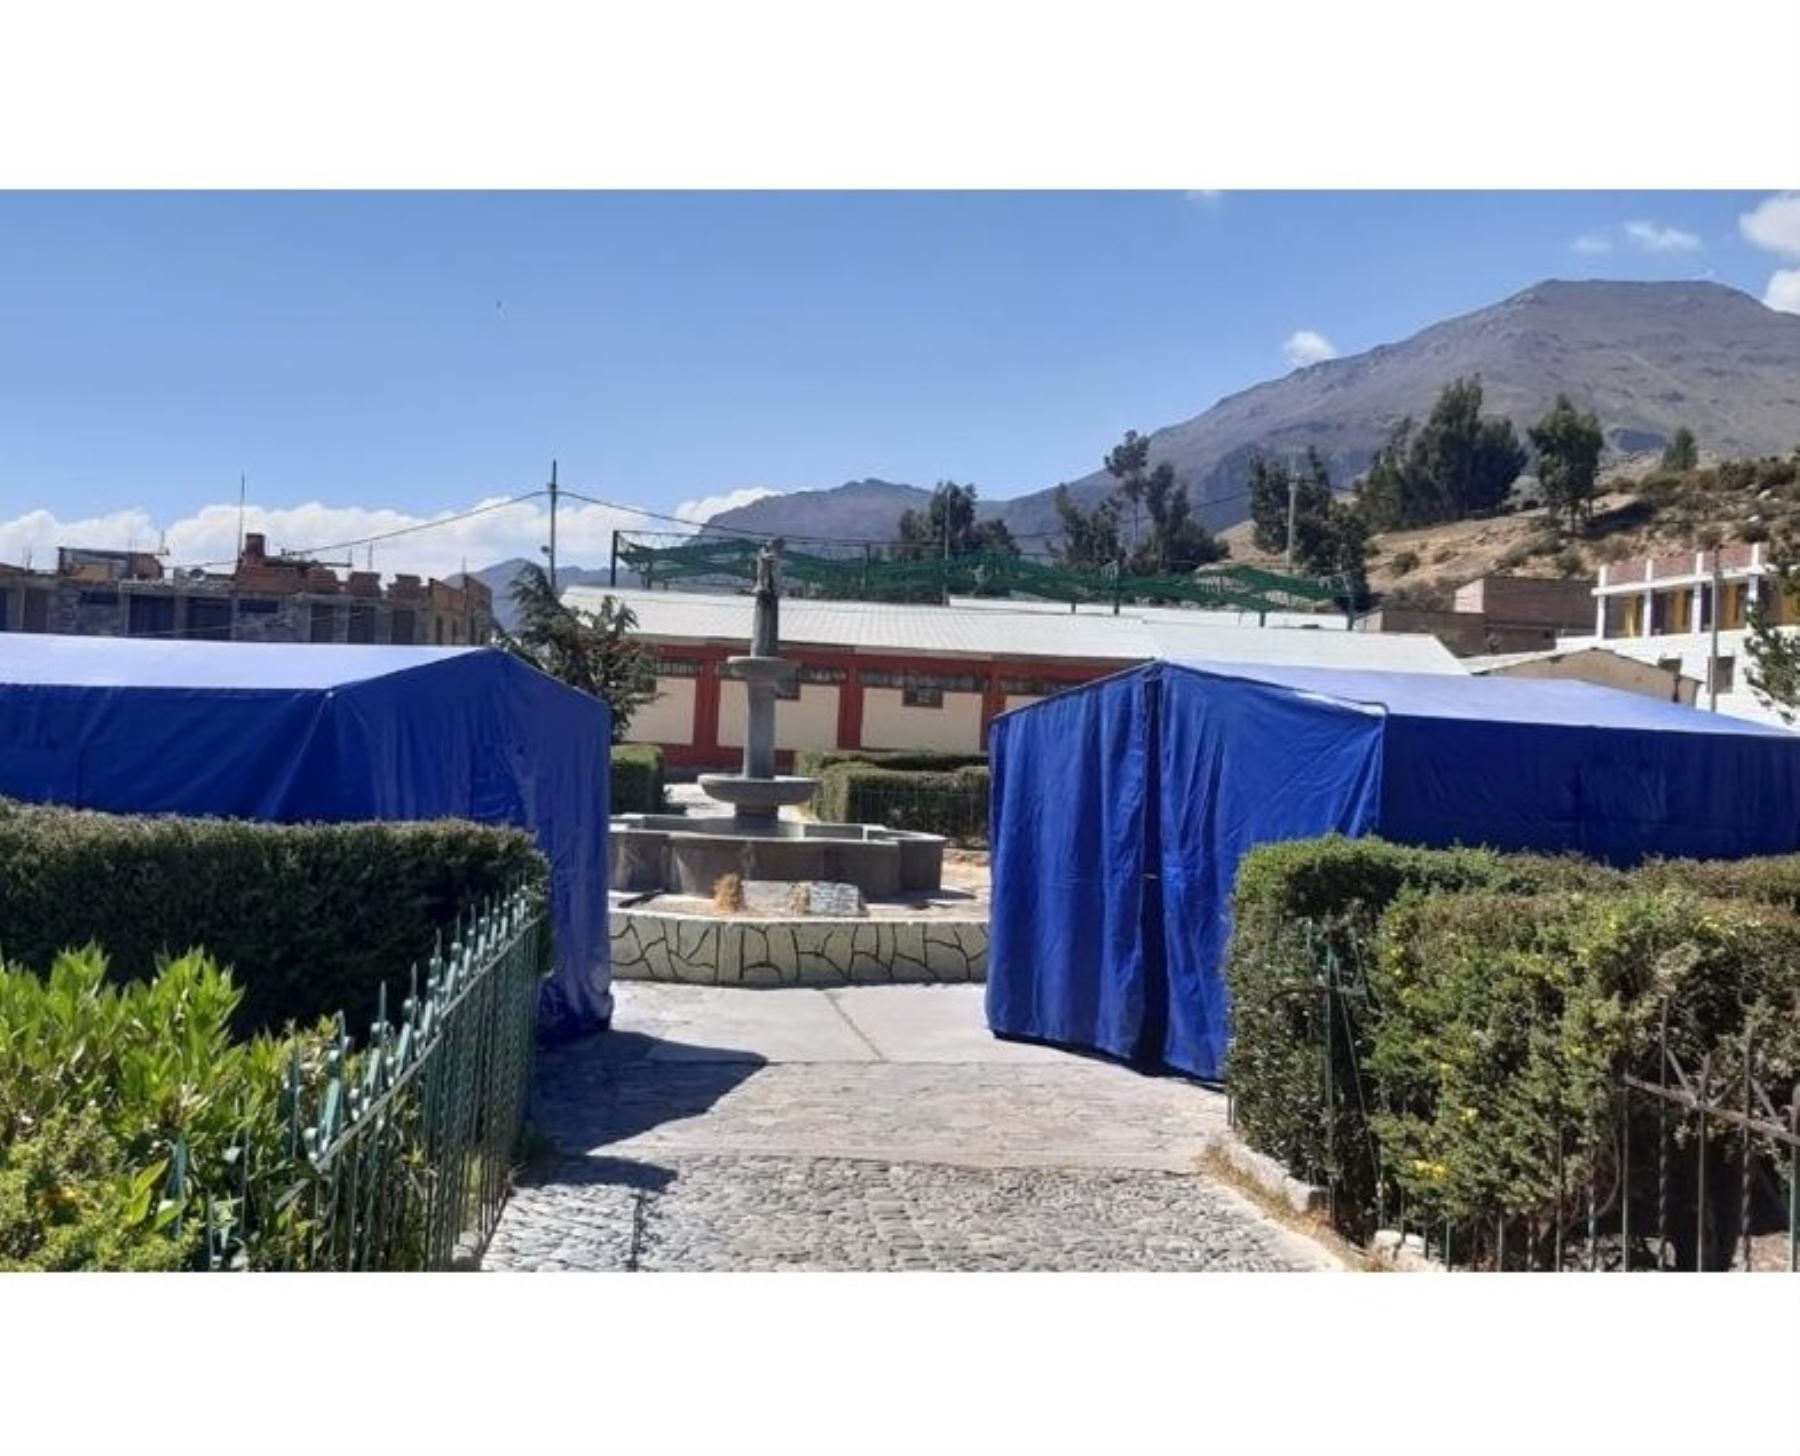 COER Arequipa instala carpas en la plaza principal del centro poblado de Pinchollo. uno de los más afectados por continuos sismos que se registran desde el viernes 8 en el distrito de Cabanaconde, provincia de Caylloma. ANDINA/Difusión